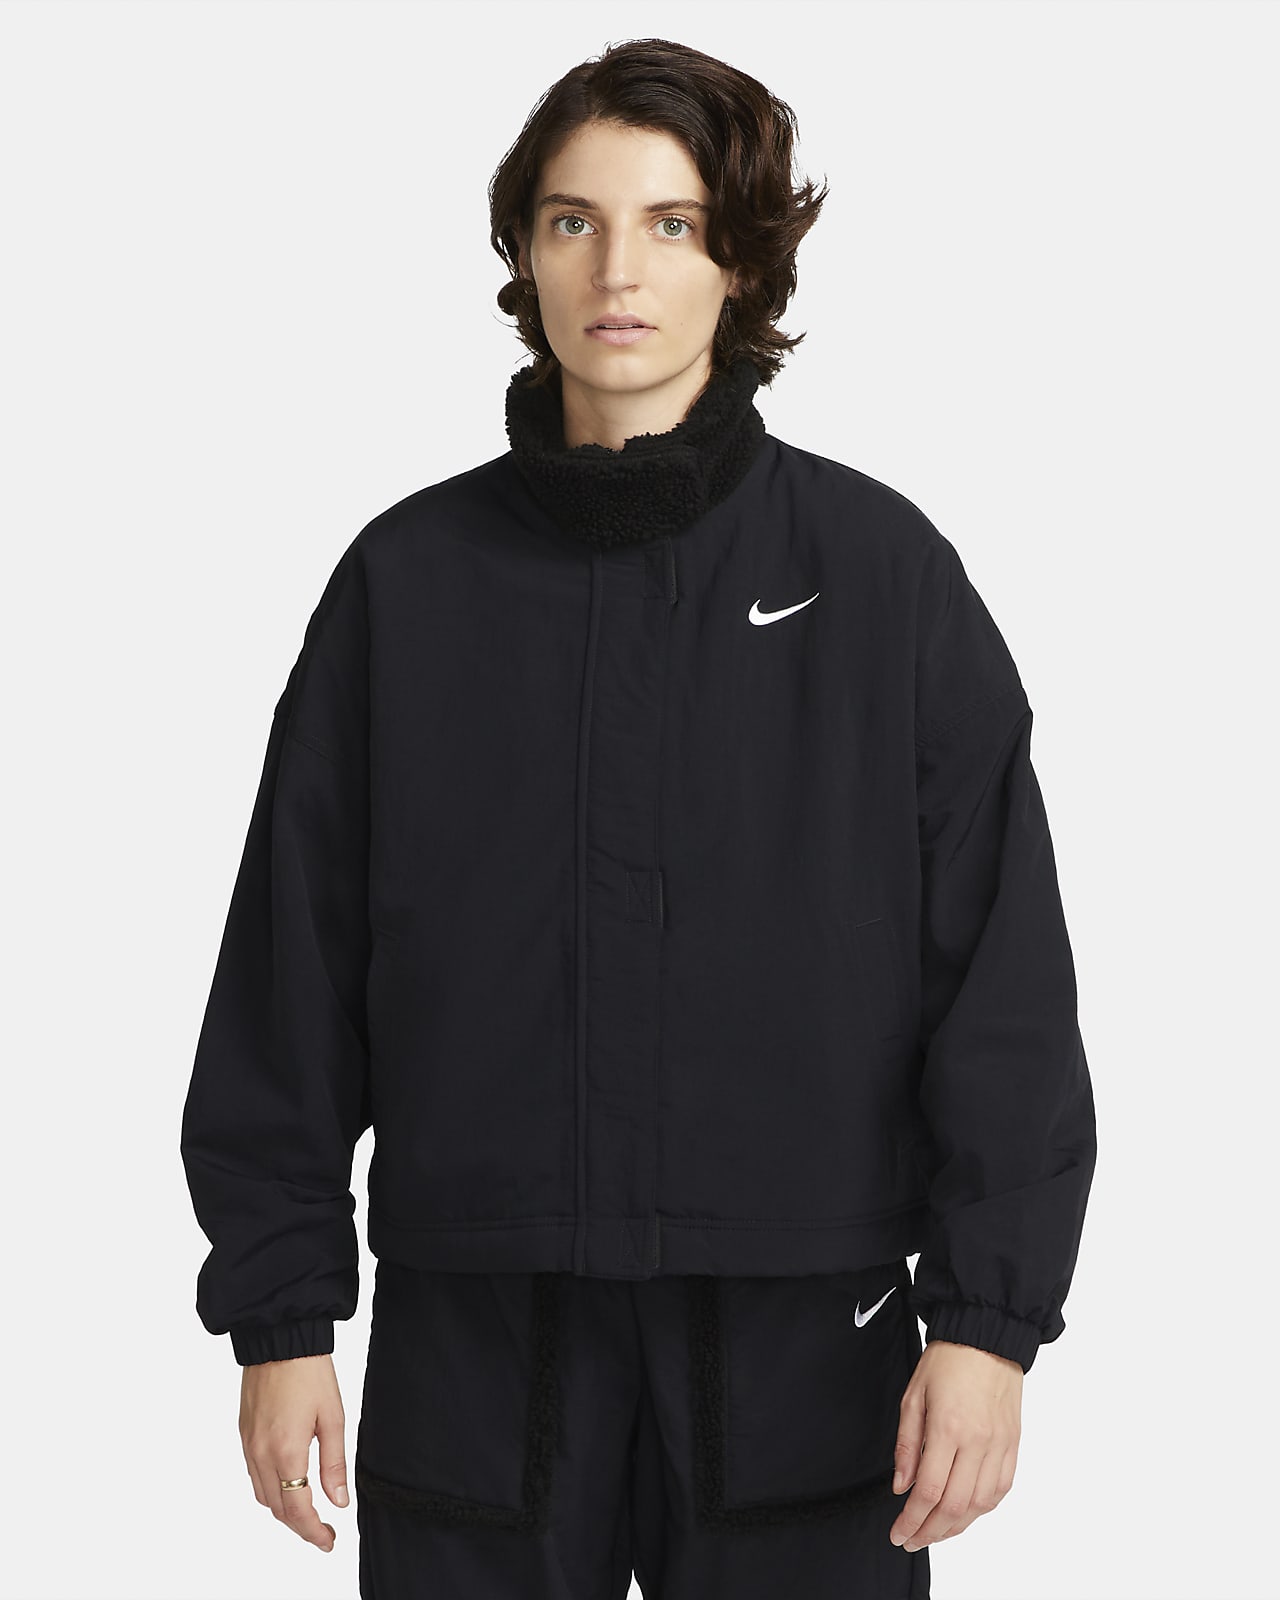 Vævet Nike Essential-fleeceforet jakke til kvinder. Nike DK